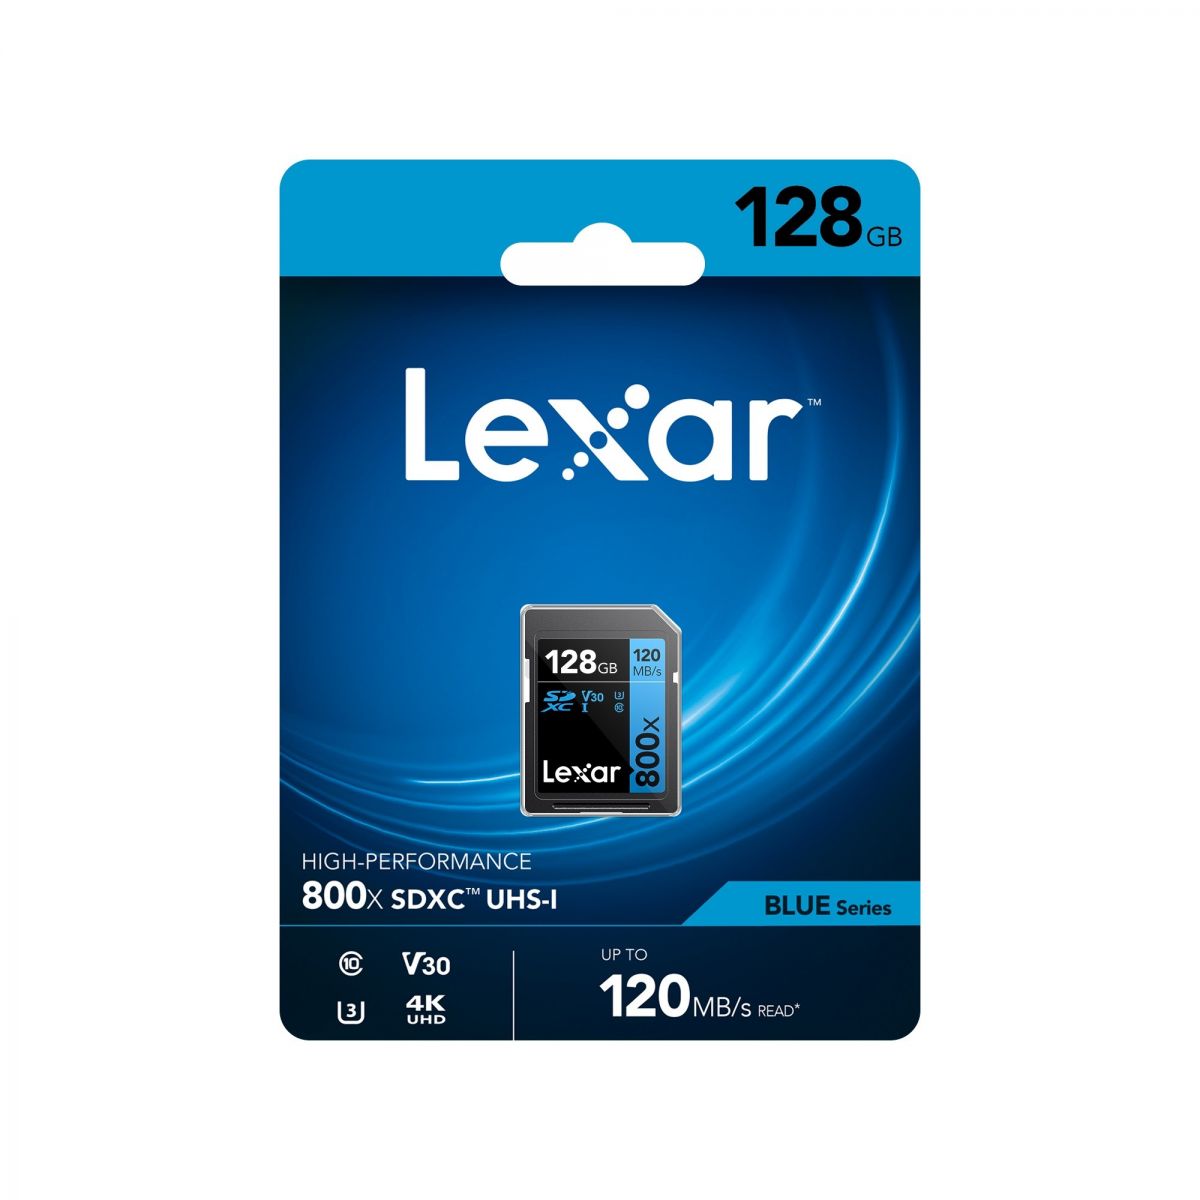 Lexar SD 128/256 GB SDXC UHS-I 800X